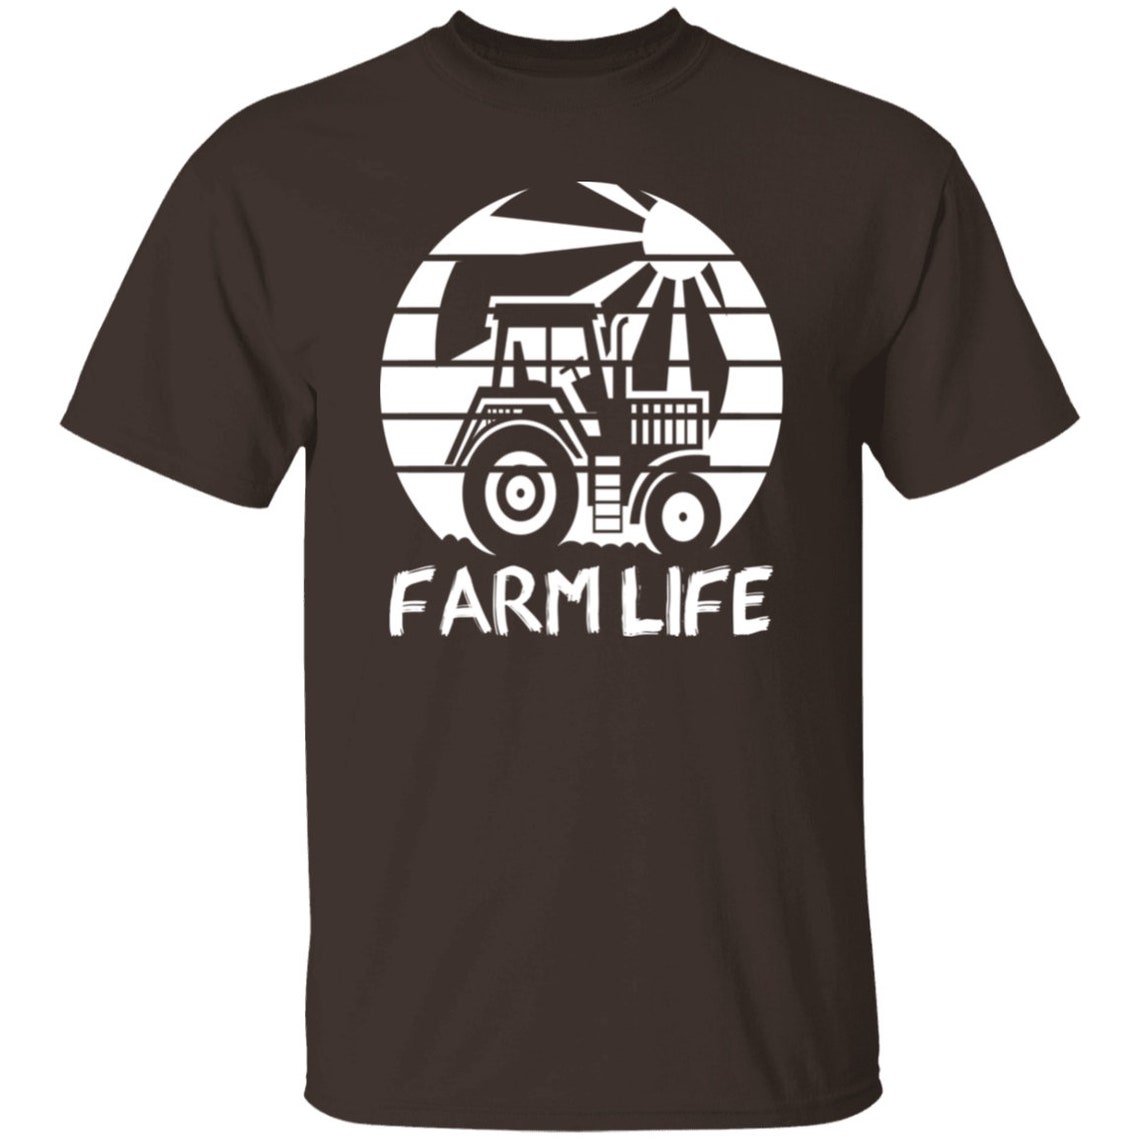 Farm life T-shirt Silhouette Farm Life Farming Tractor Family | Etsy